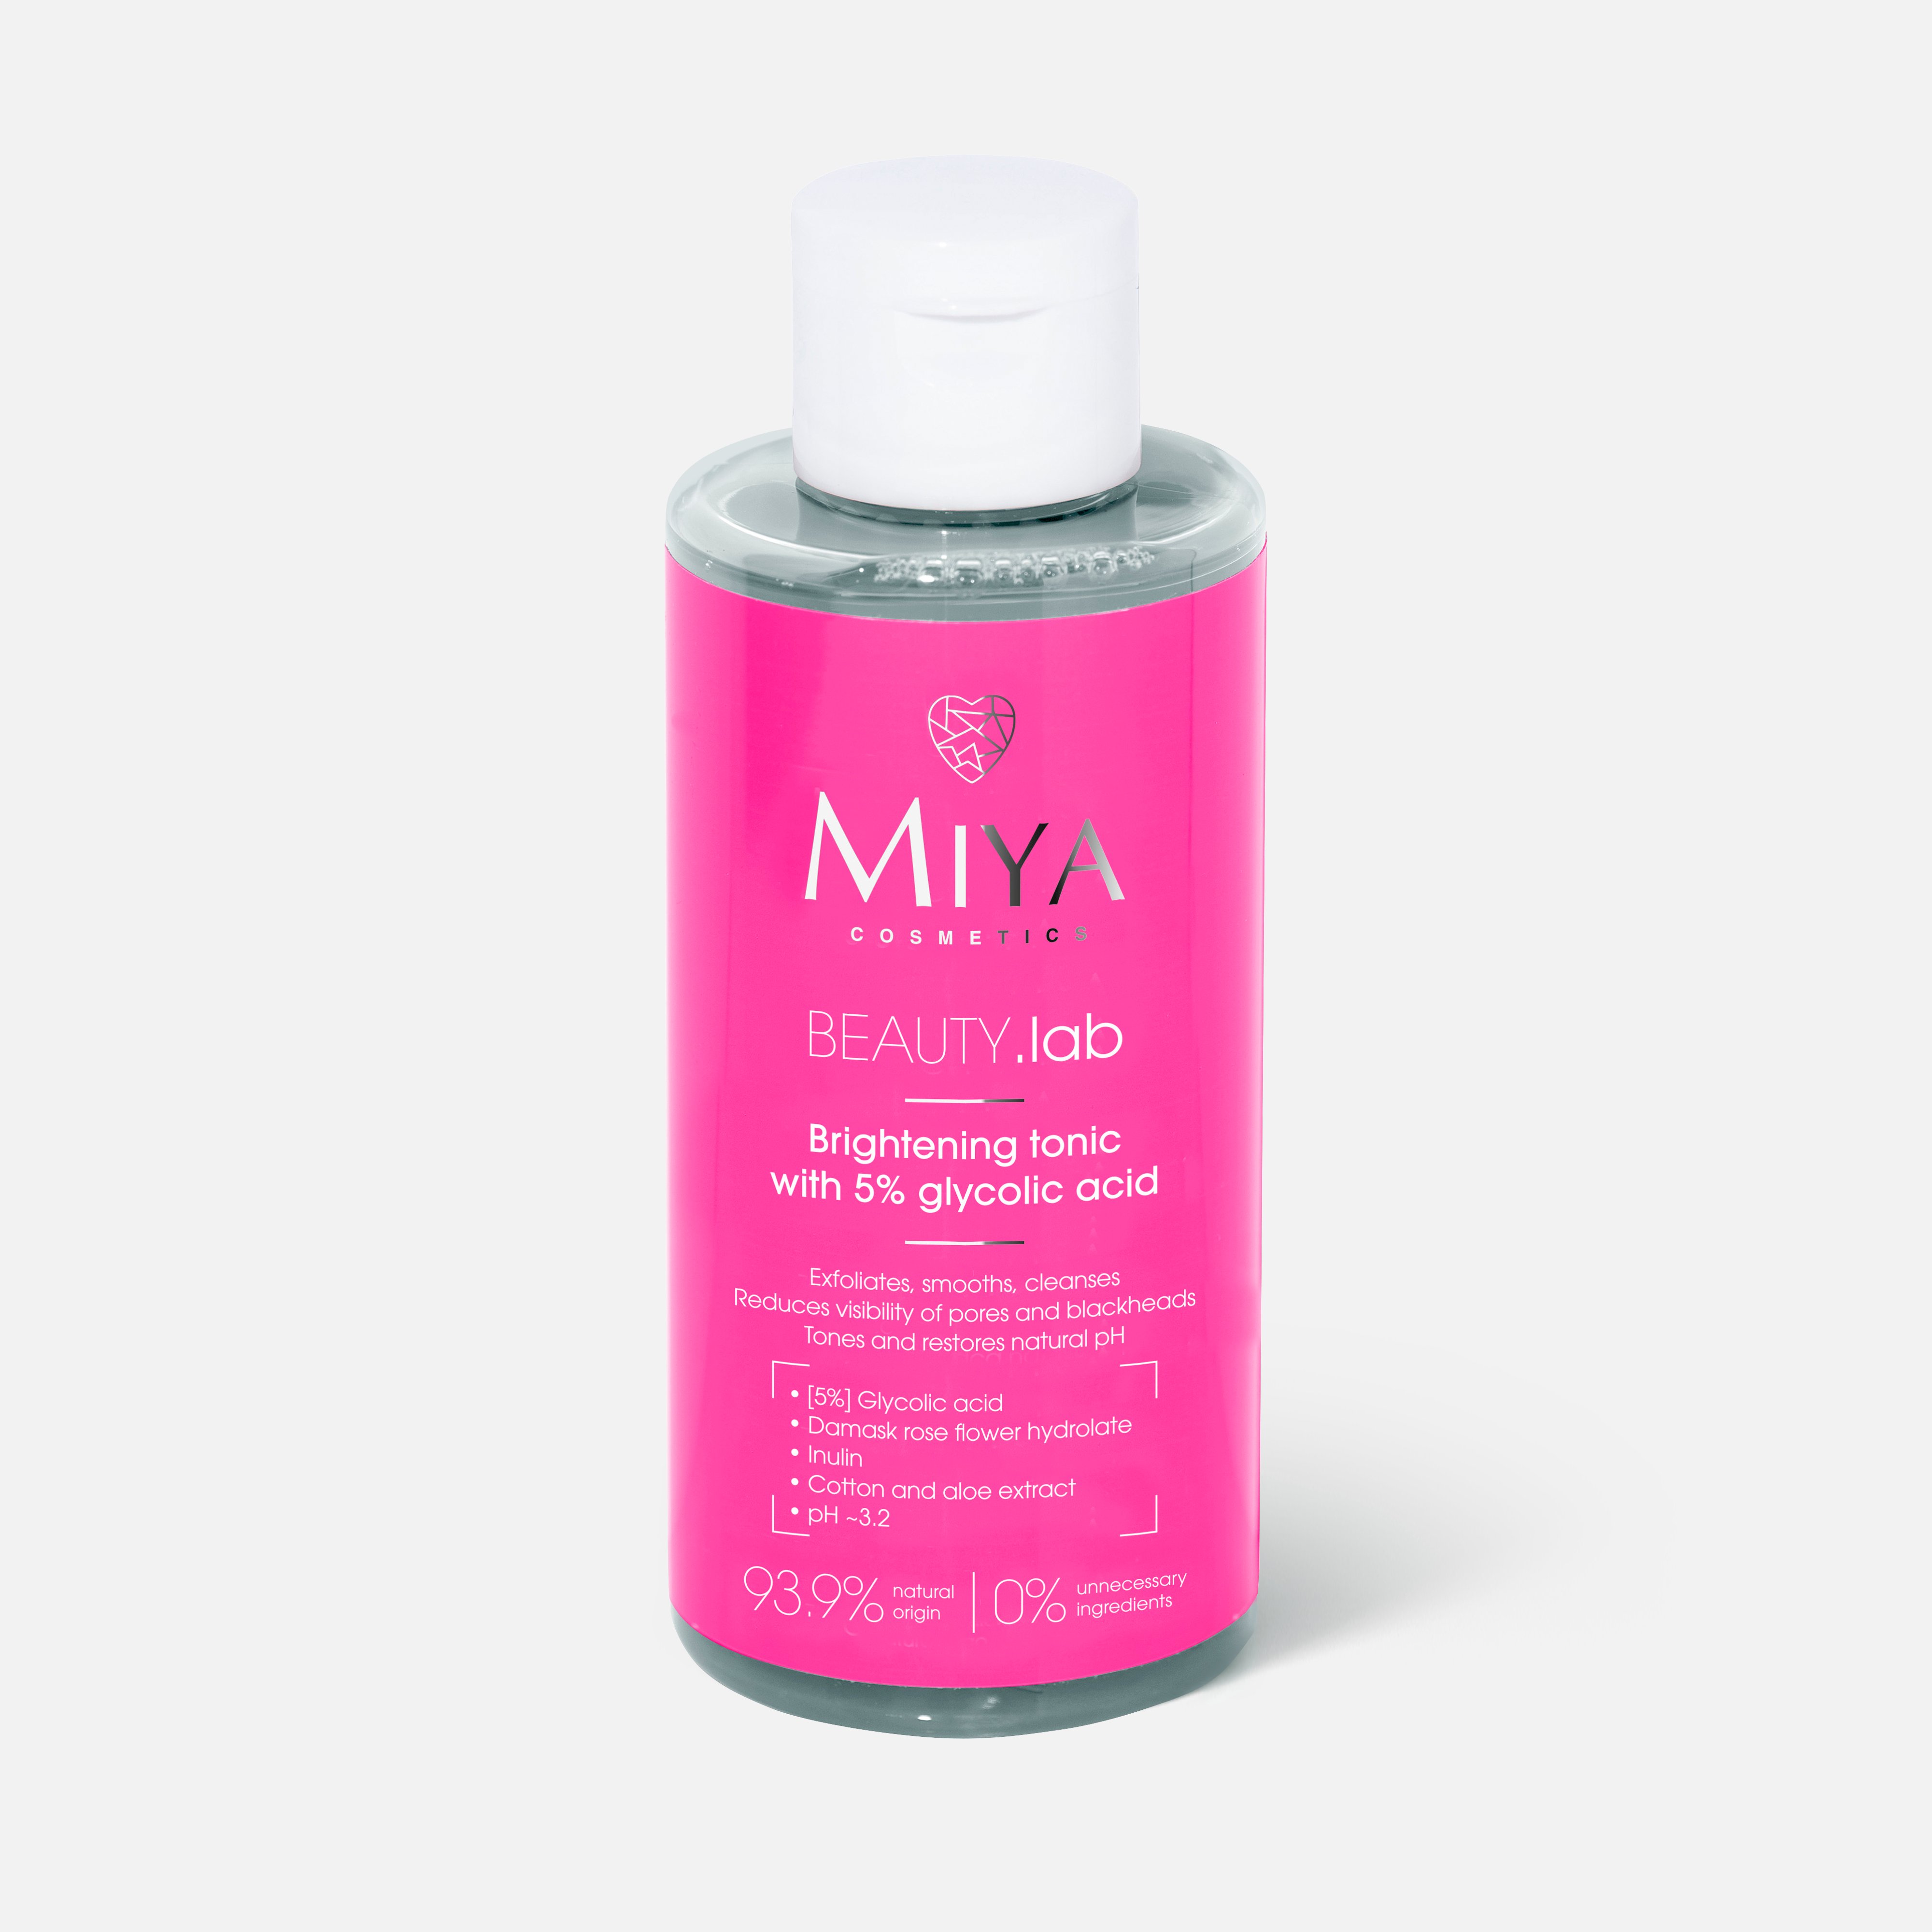 Тоник для лица Miya cosmetics Beauty.Lab Brightening, Glycolic acid 5%, 150 мл teana пилинг для лица aha pha кислотный пилинг гликолевая кислота 10%